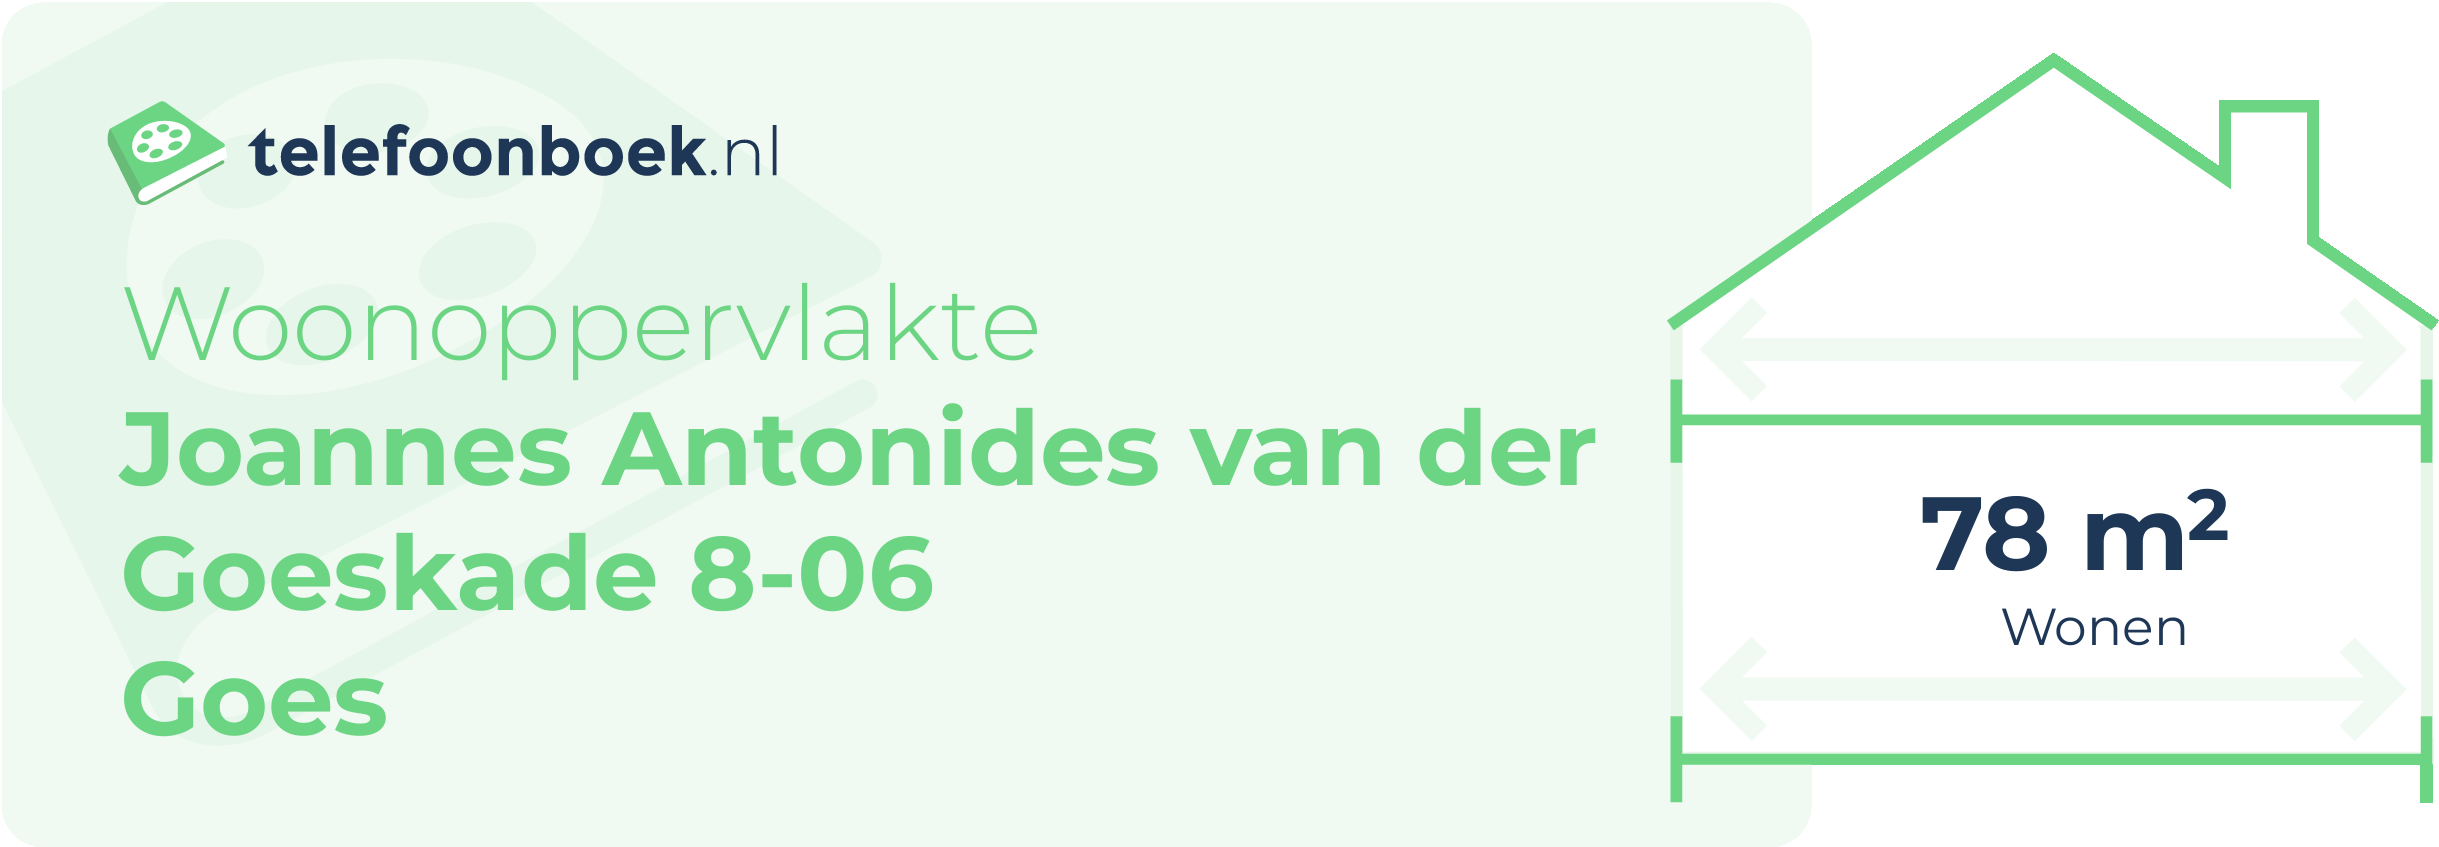 Woonoppervlakte Joannes Antonides Van Der Goeskade 8-06 Goes